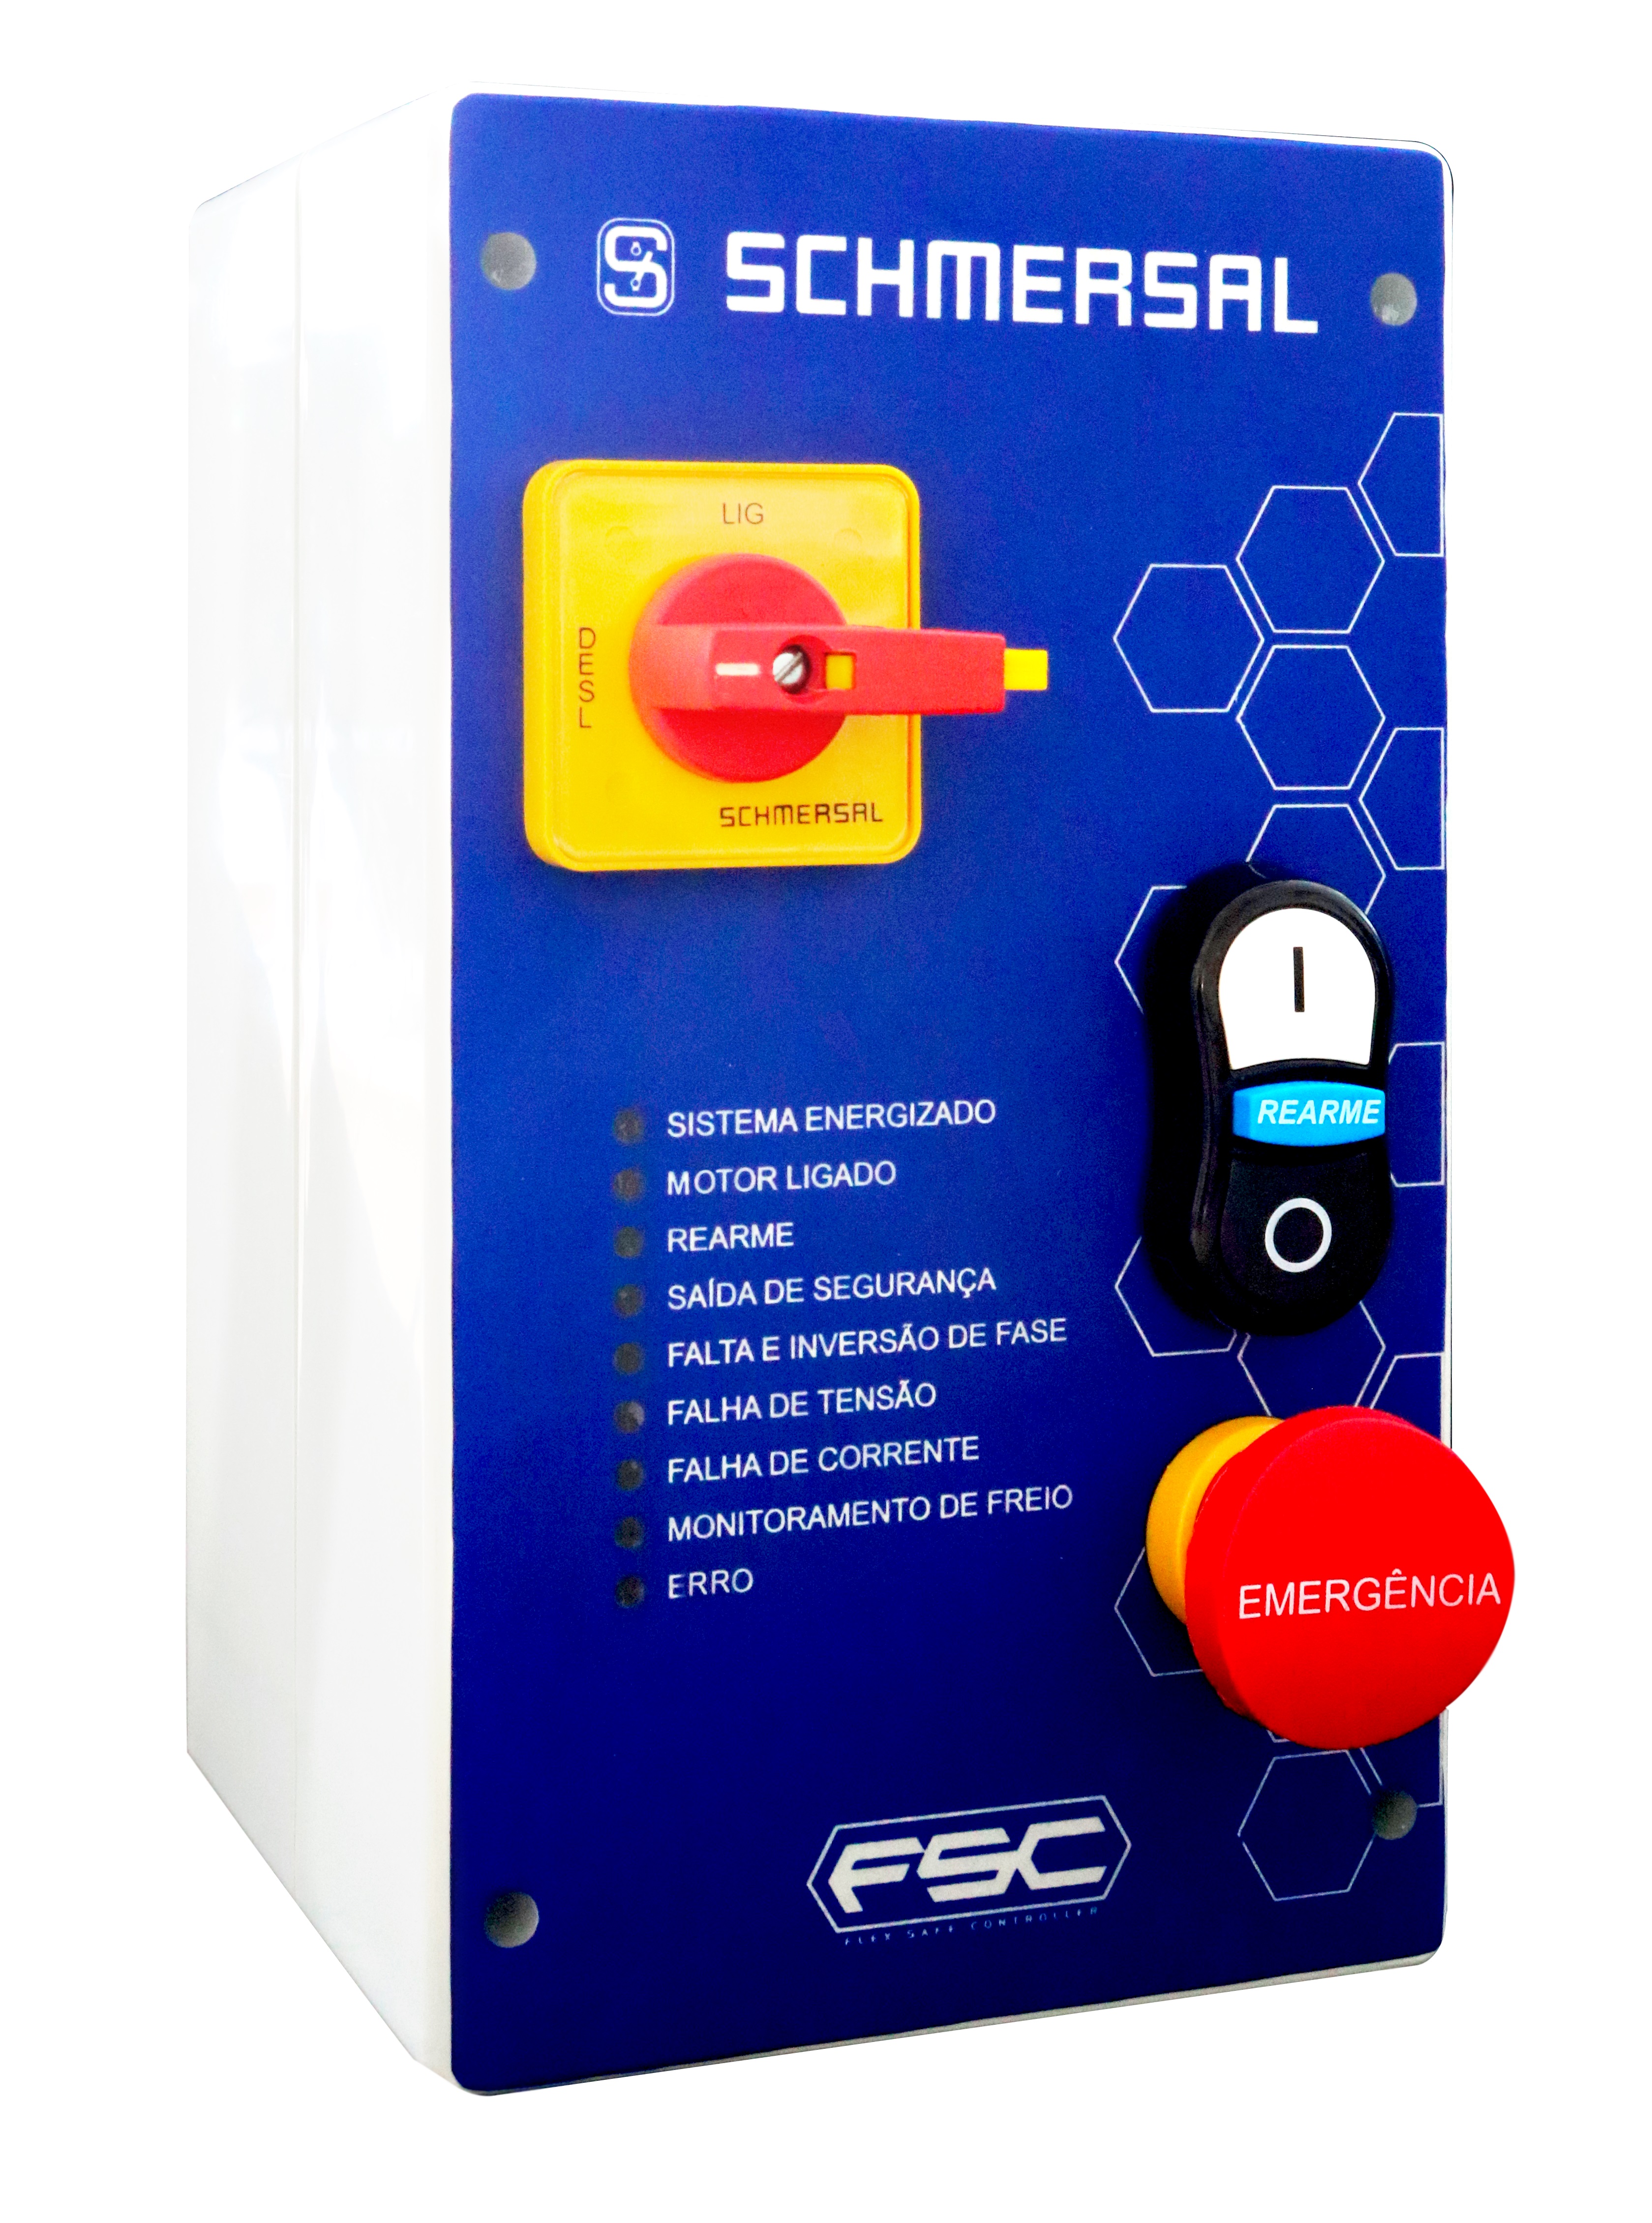 Schmersal lança sistema de controle e segurança para máquinas